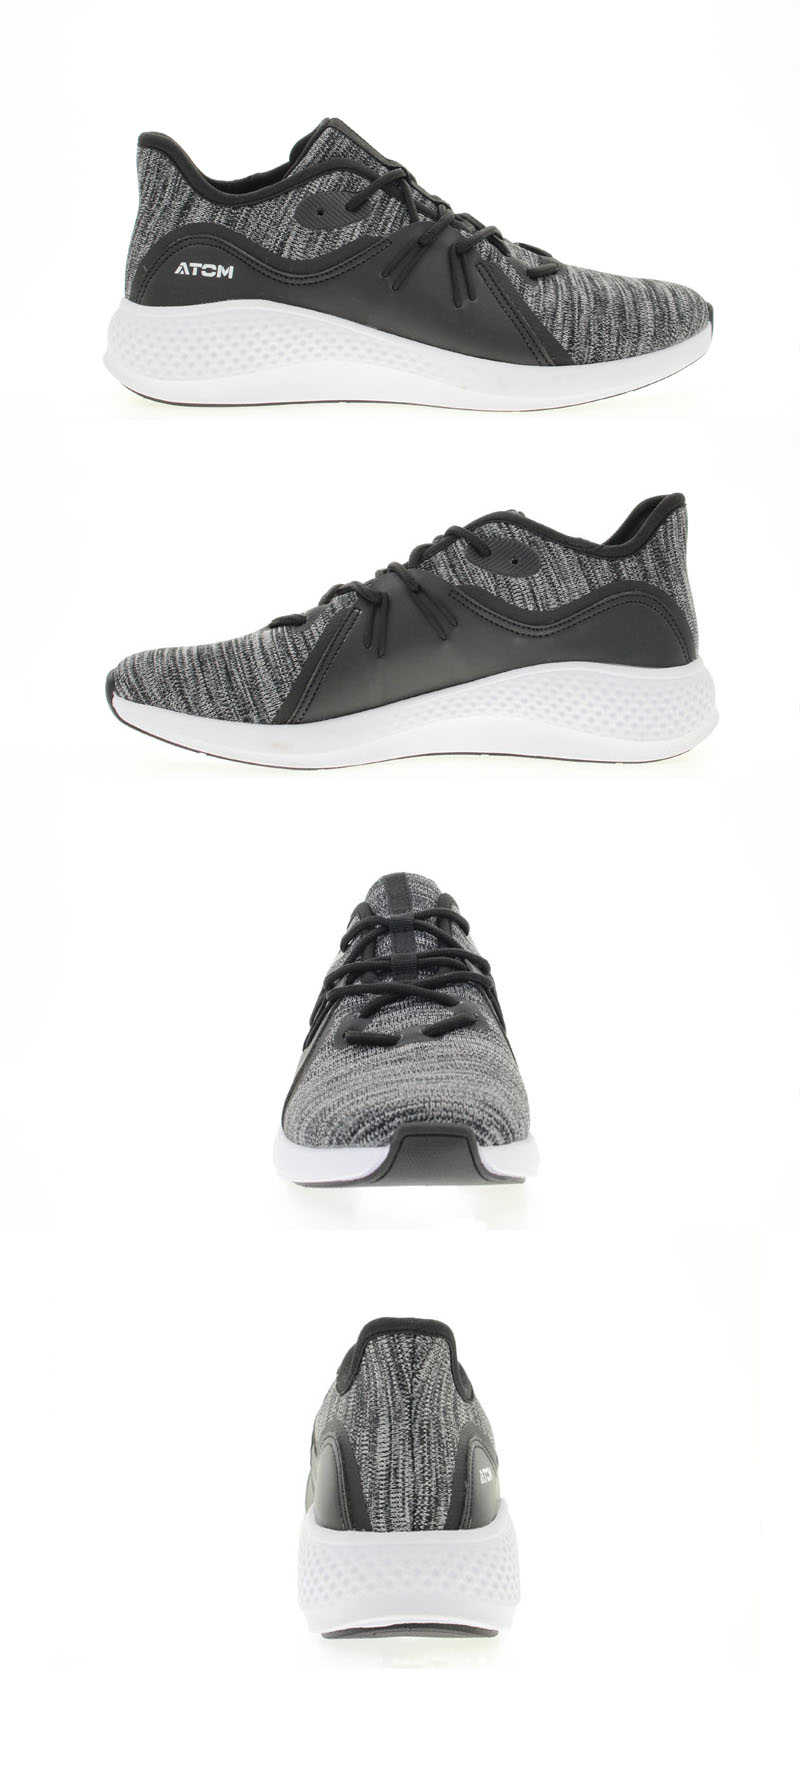 Black white color mixture shoes